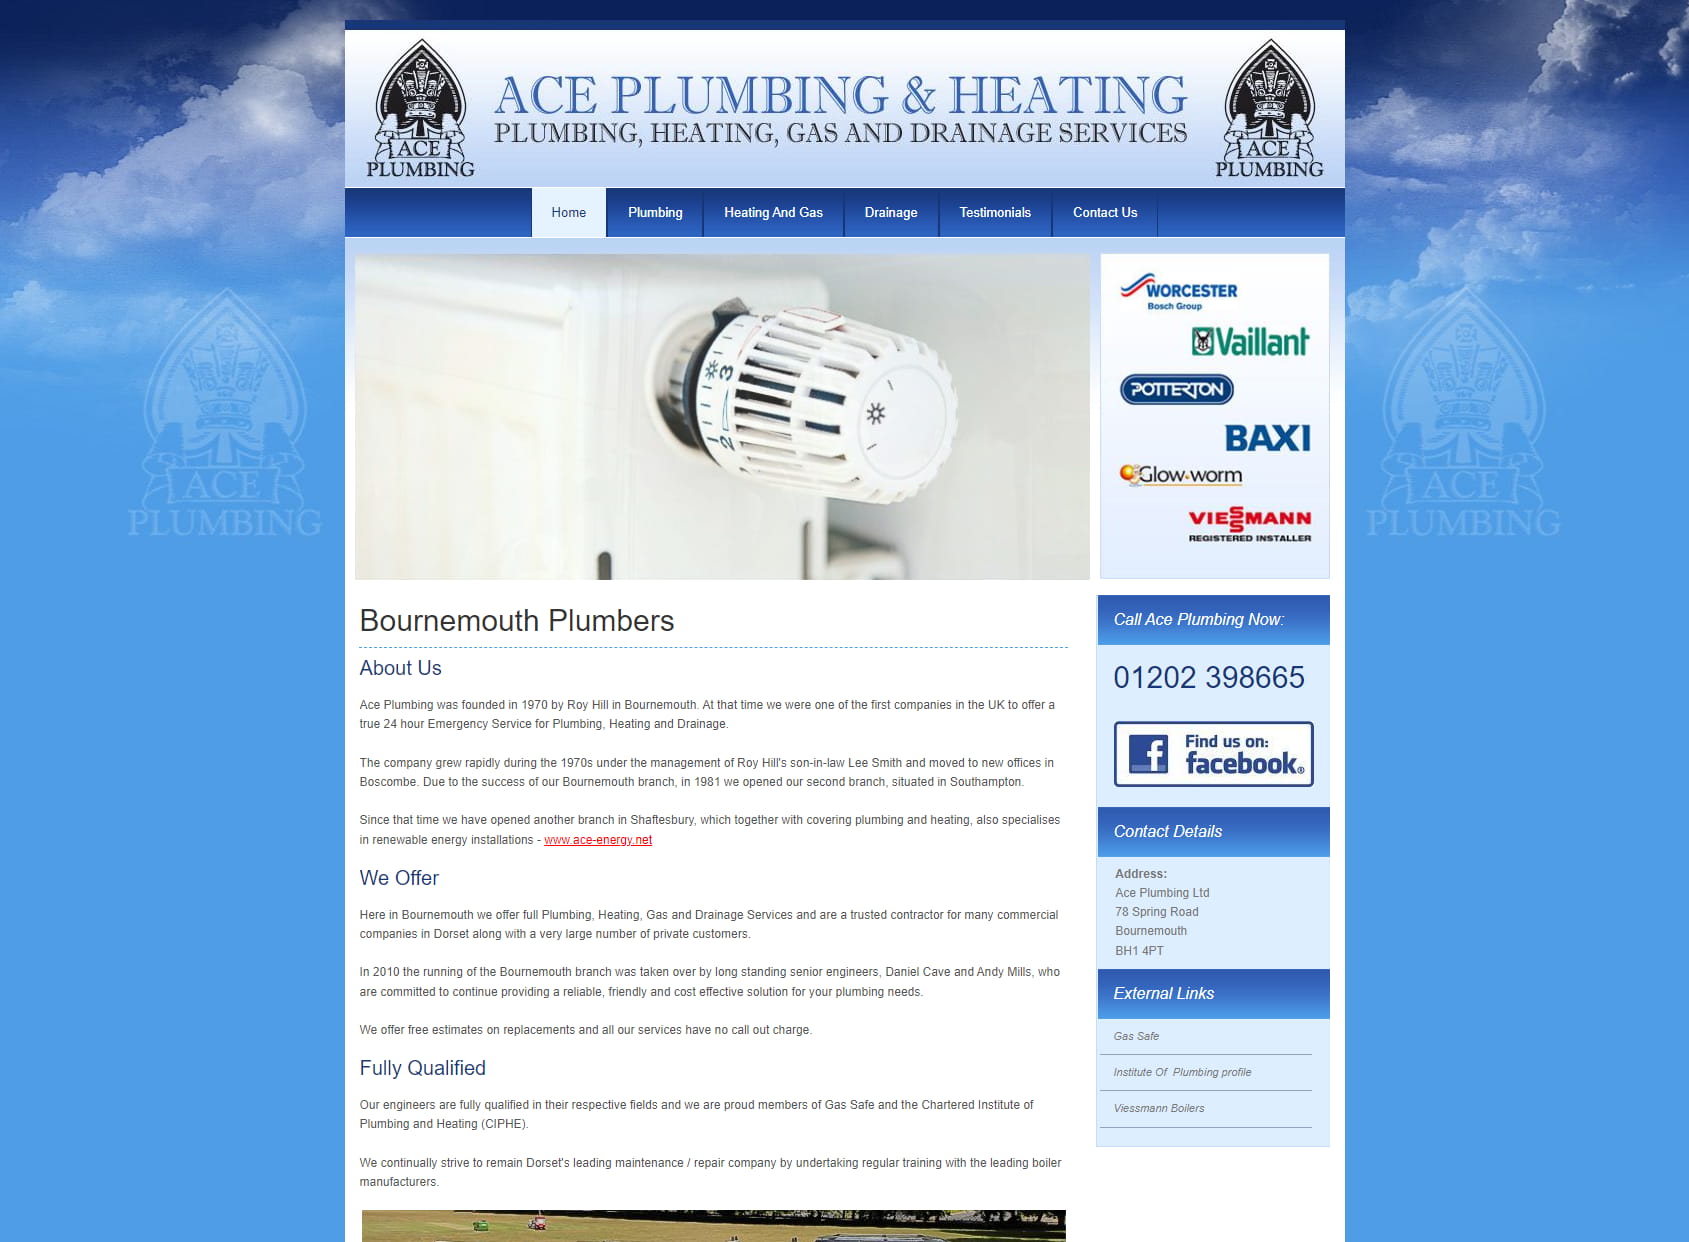 Ace Plumbing & Heating